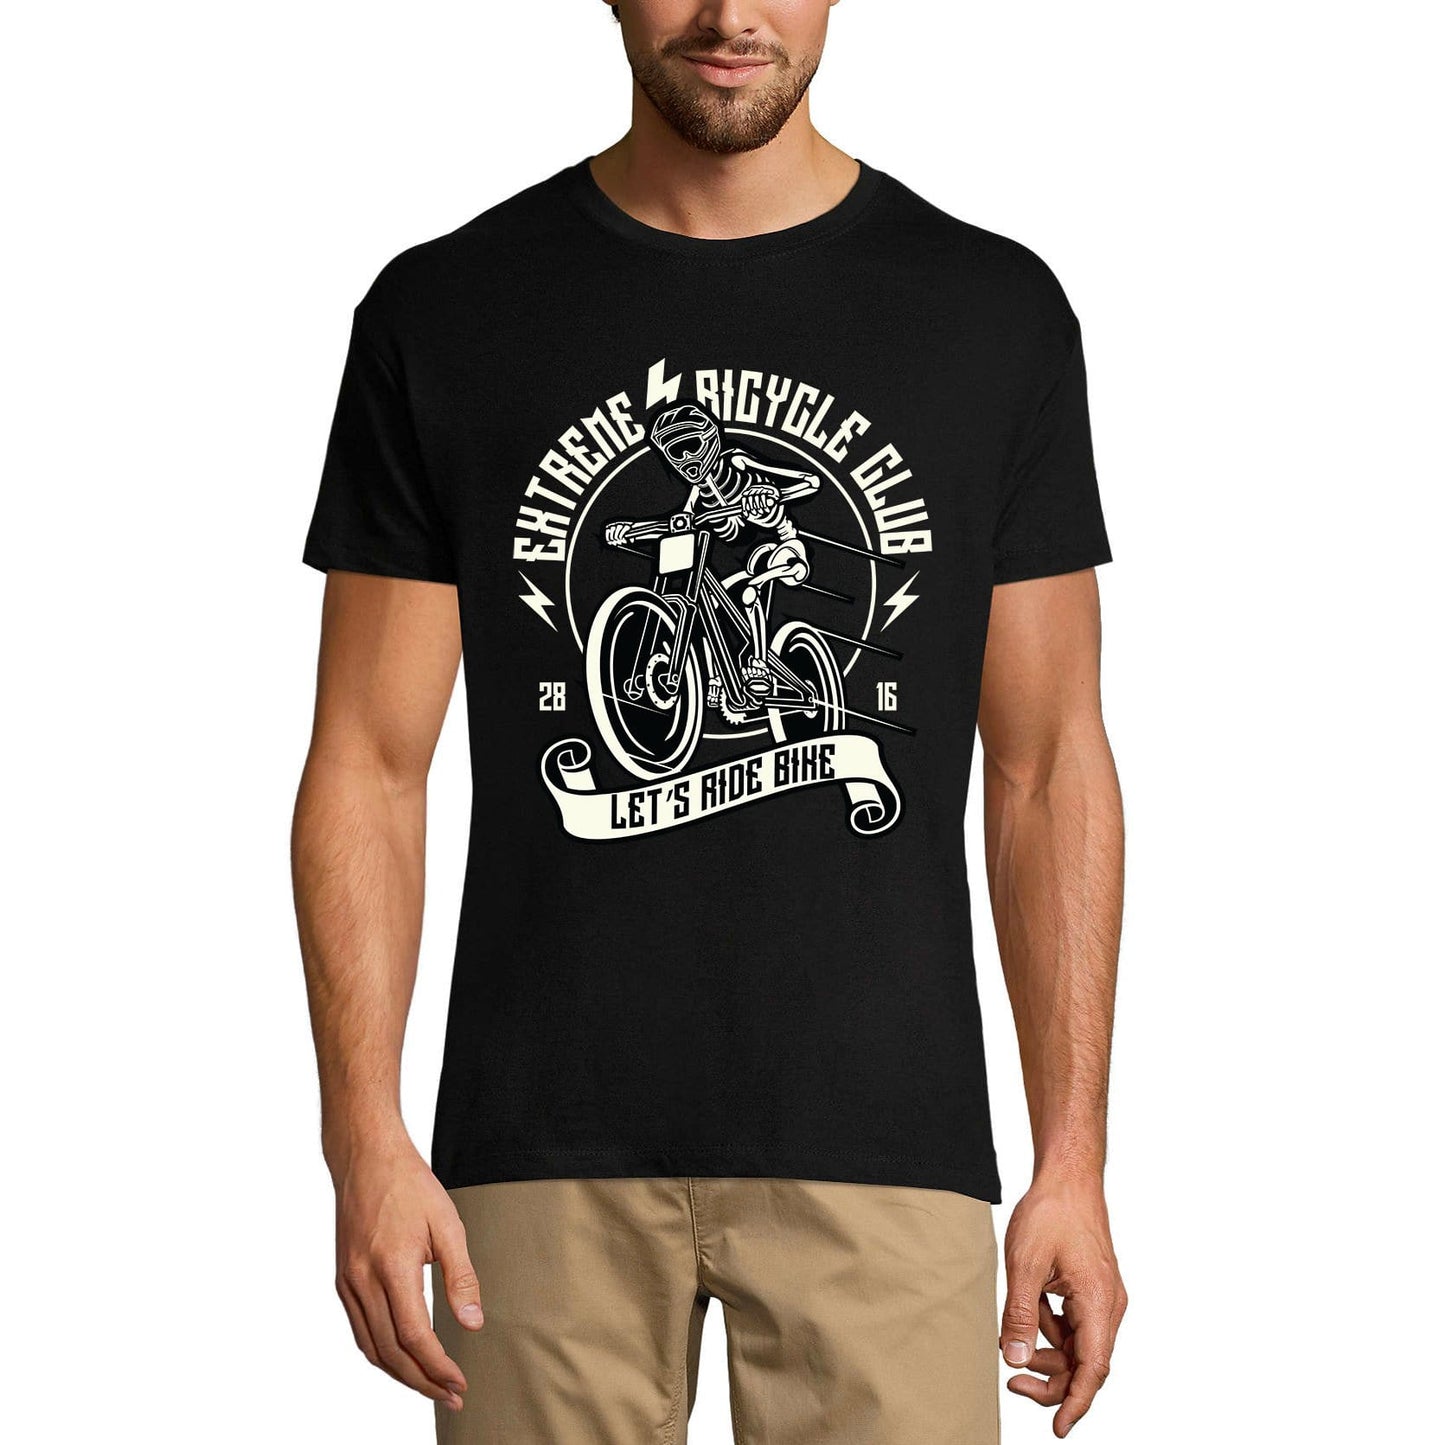 ULTRABASIC Herren T-Shirt Extreme Bicycle Club – Let's Ride Bike T-Shirt für Biker